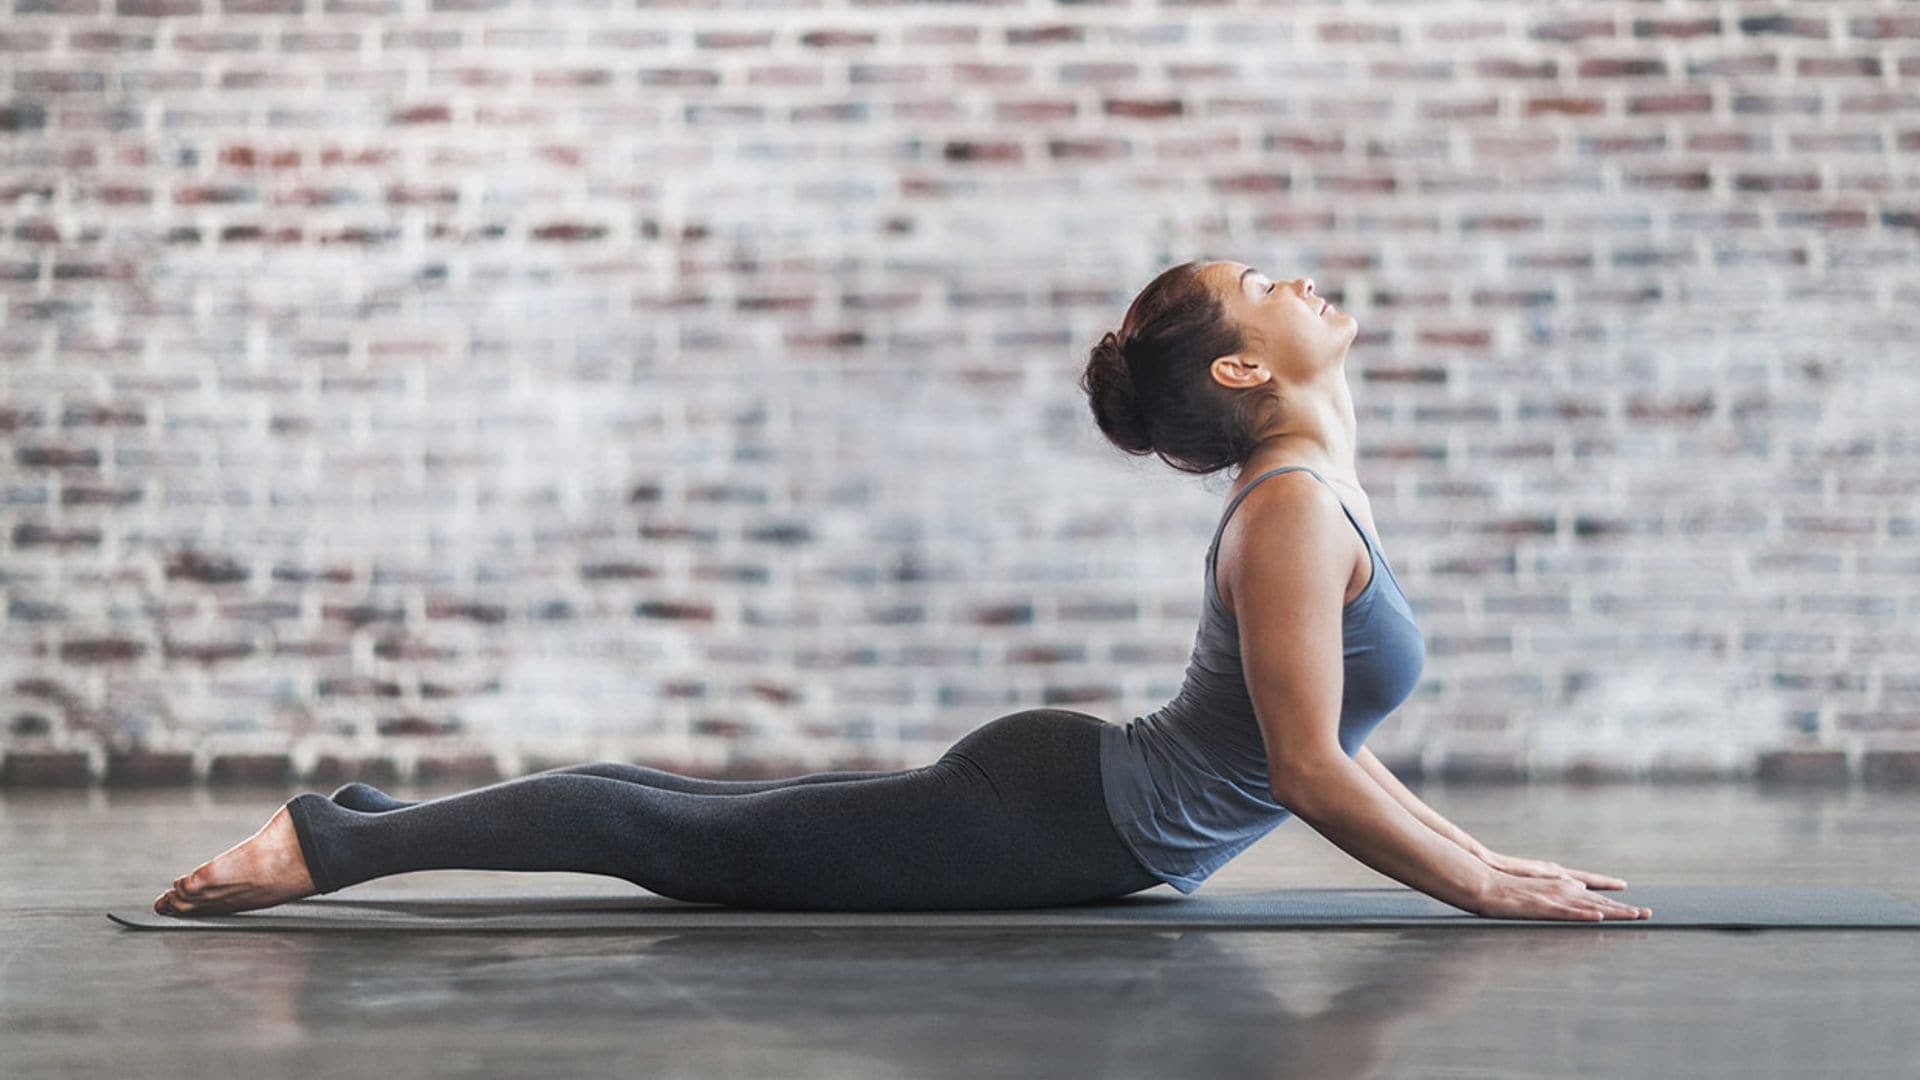 Así es como el Pilates puede ayudarte a ganar flexibilidad